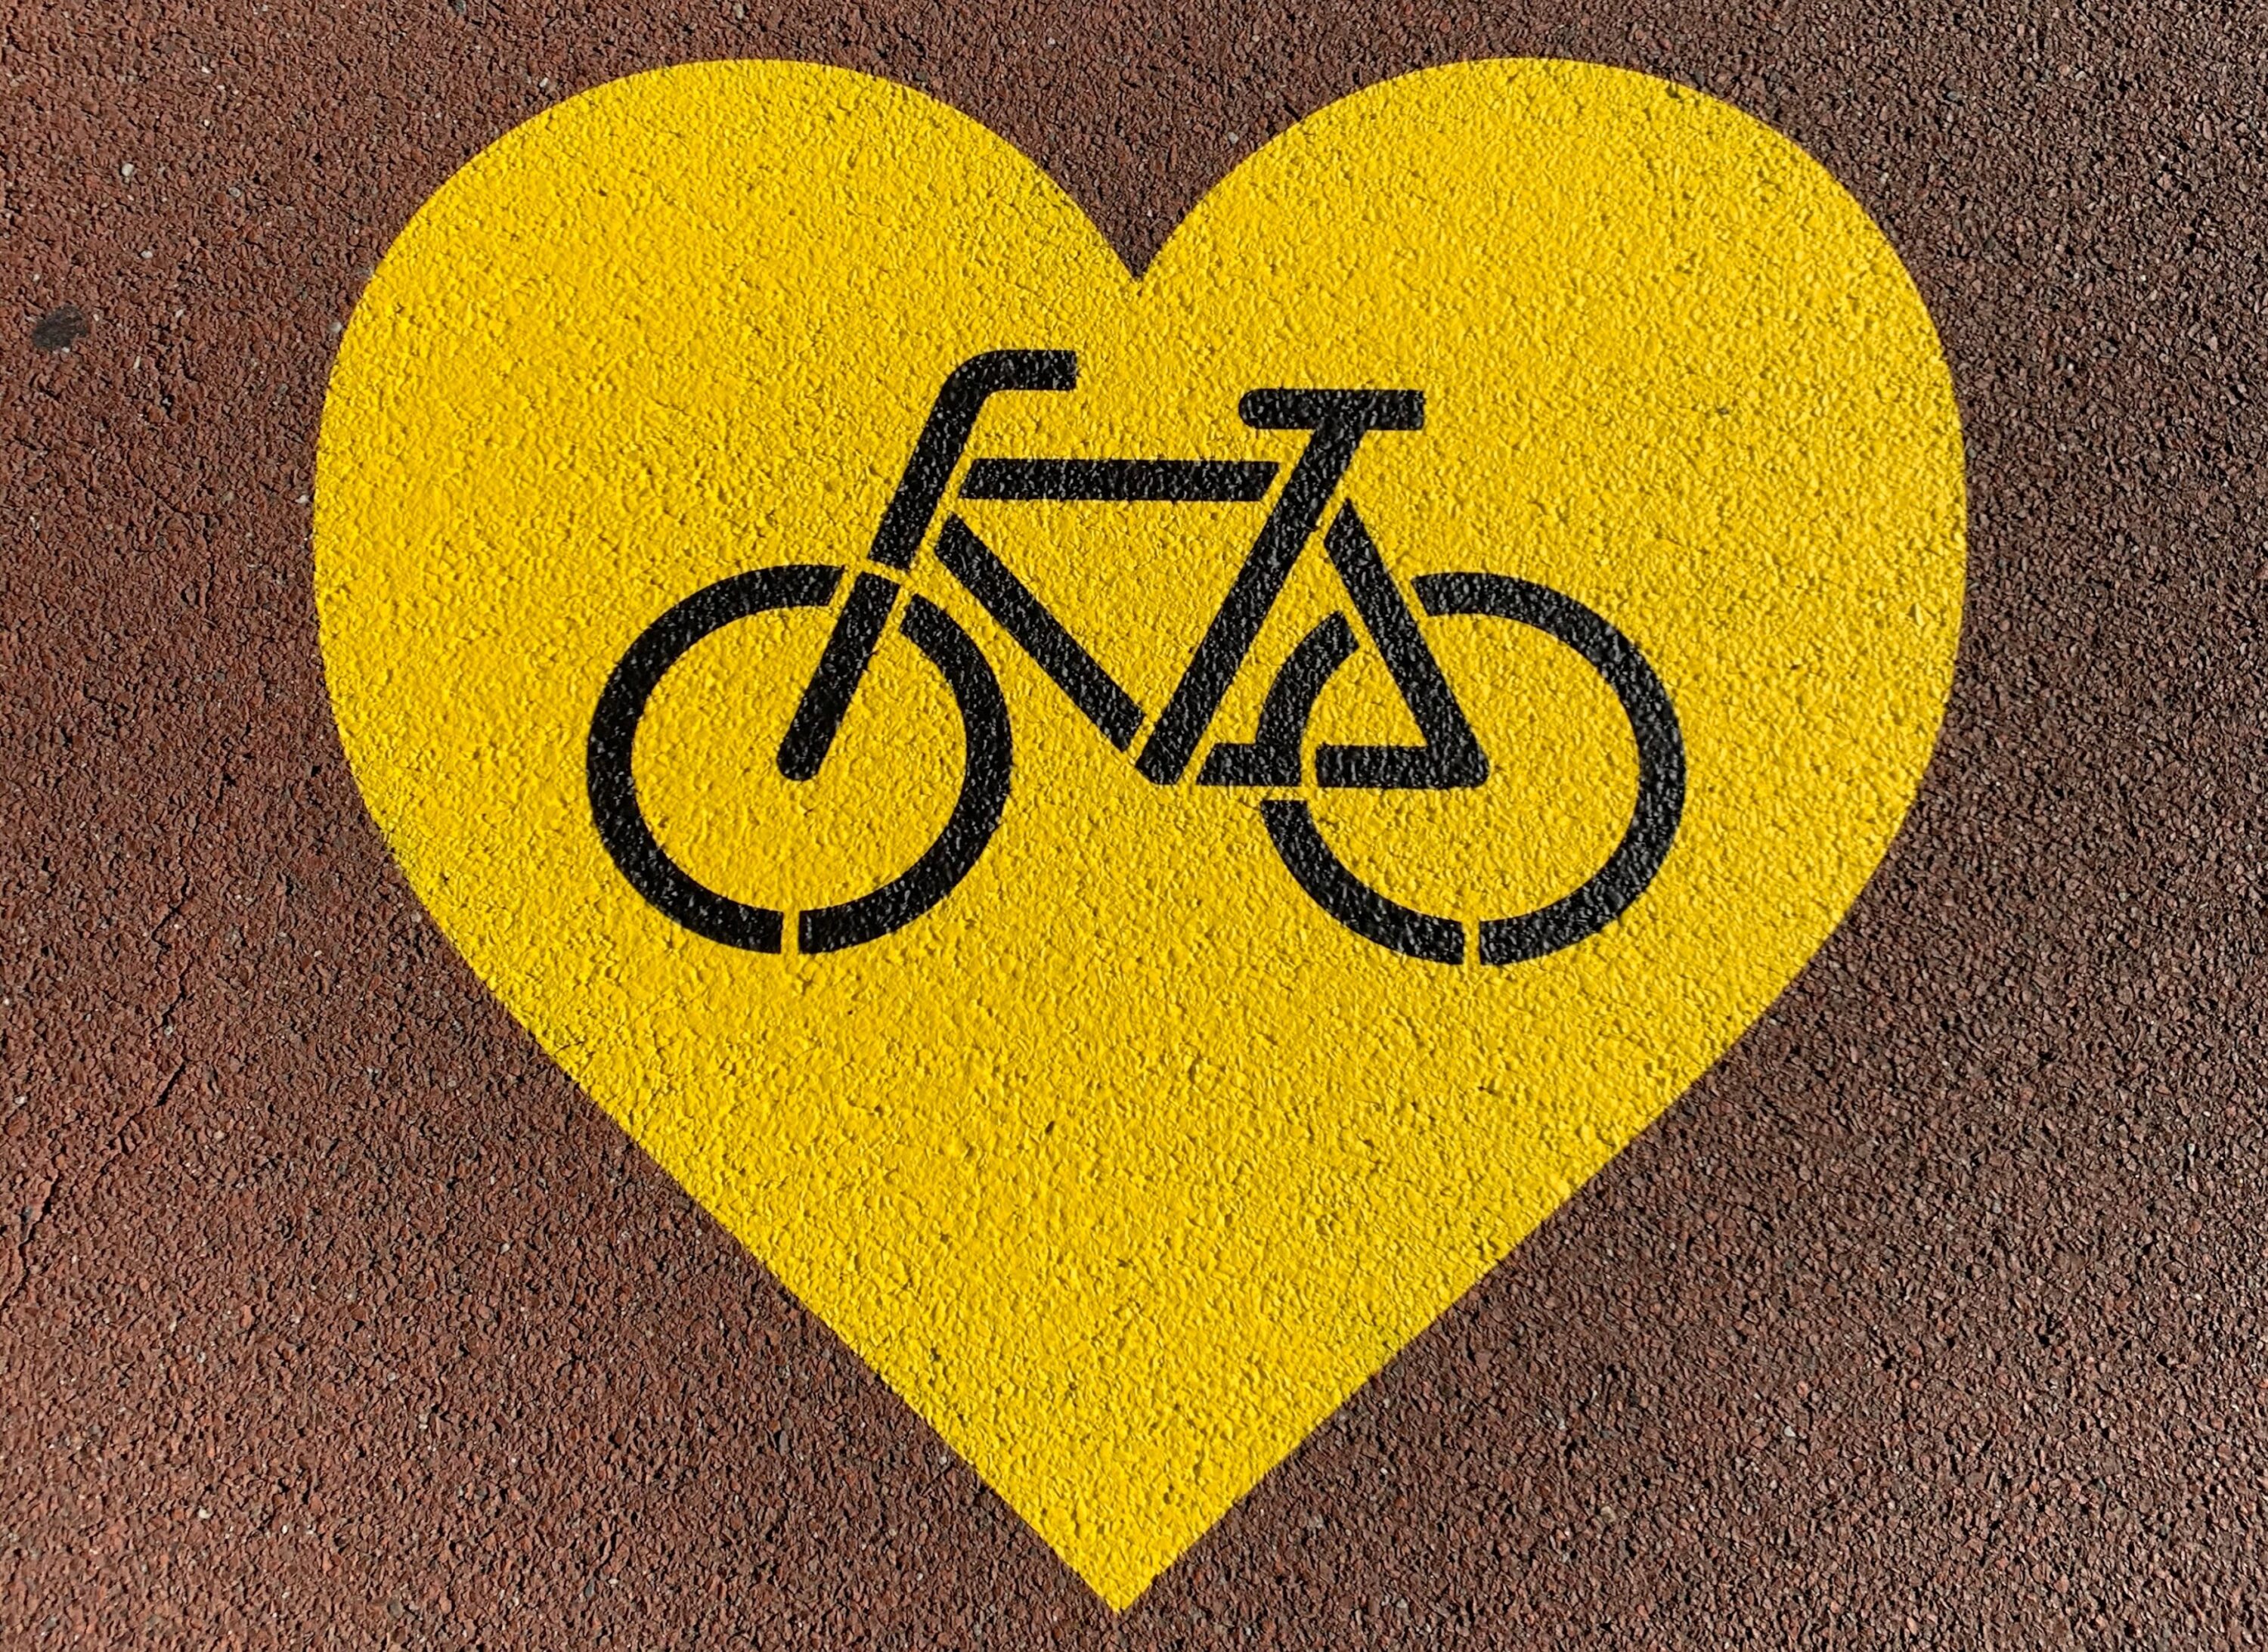 Målat gult hjärta med cykel